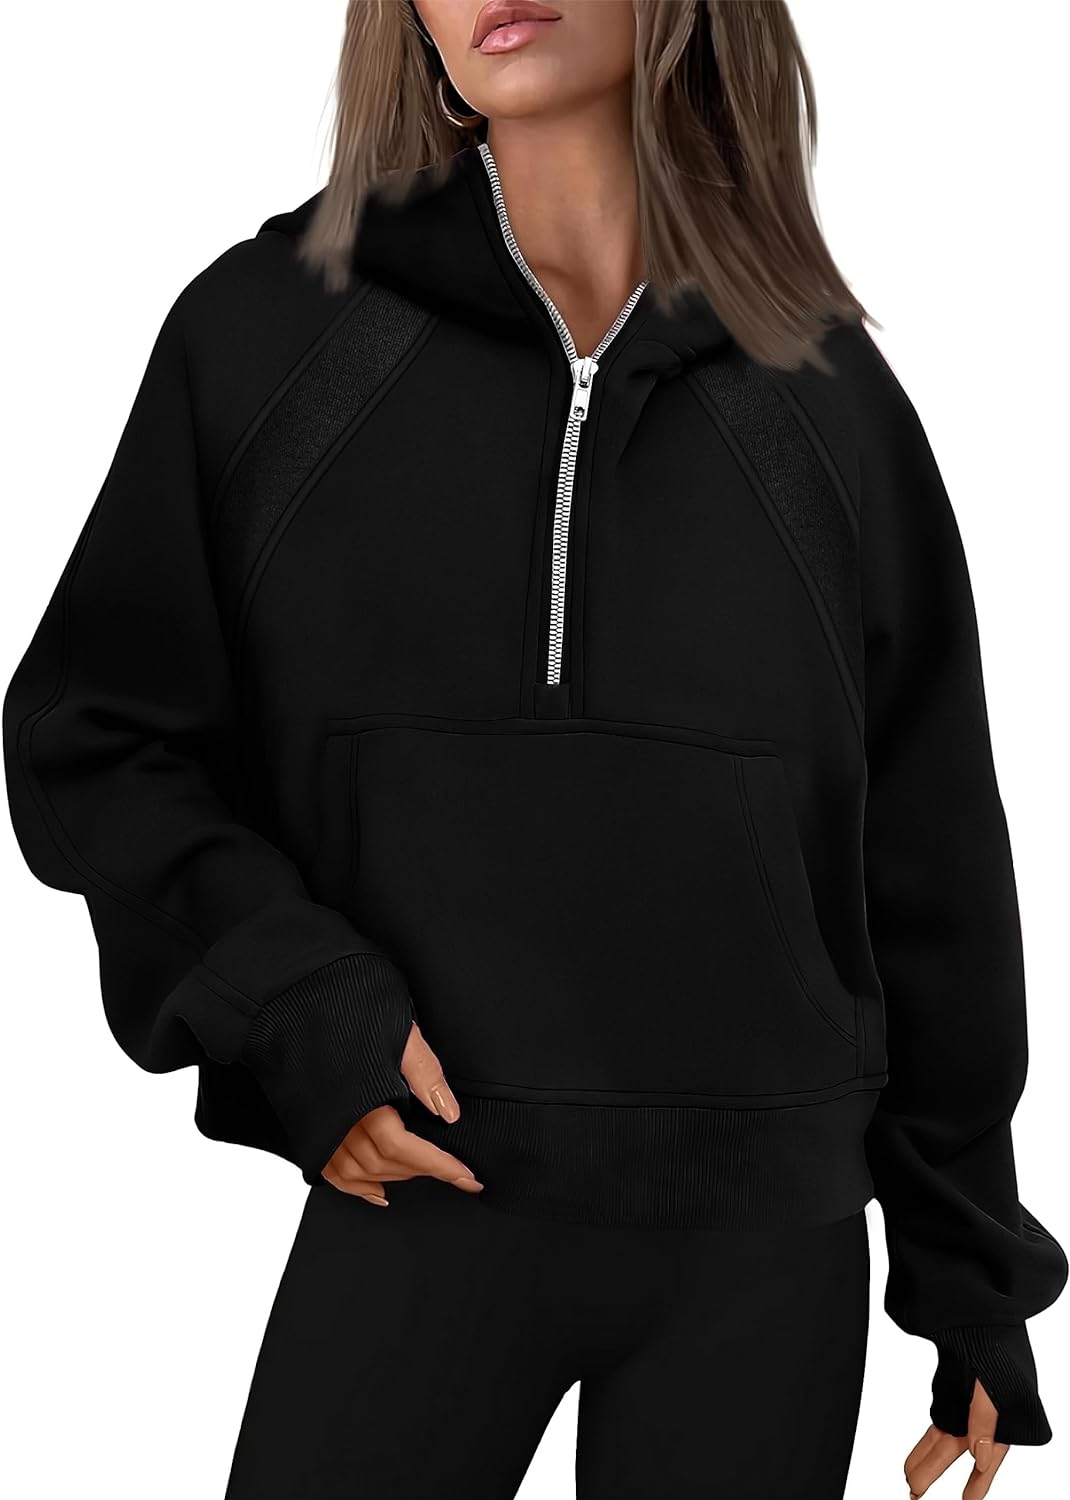 Women's Half-Zip Thumbhole Hooded Sweatshirt(Buy 2 Free Shipping)